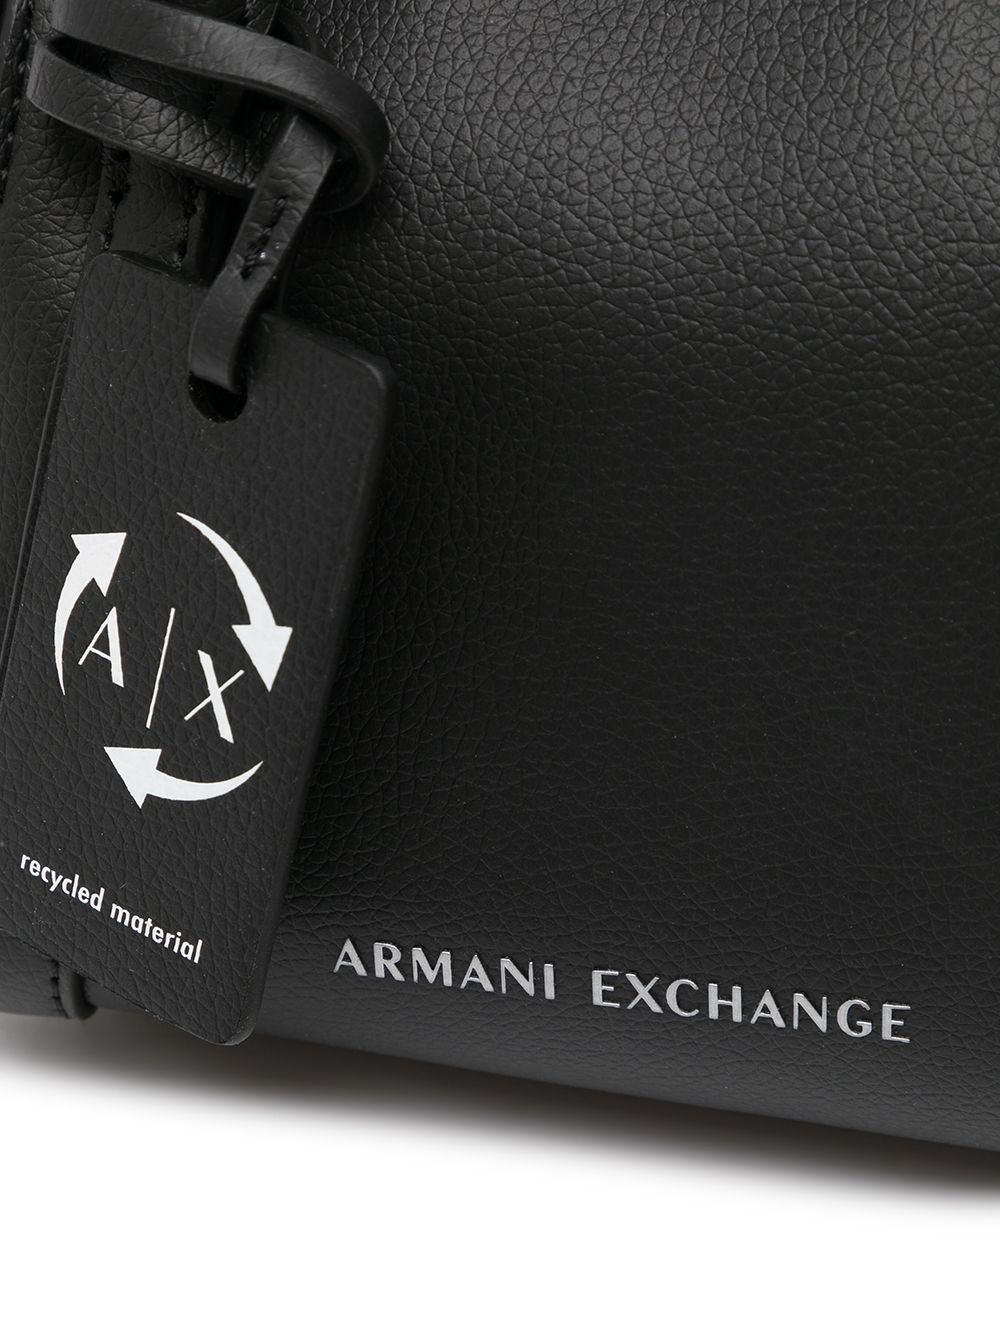 фото Armani exchange сумка размера мини